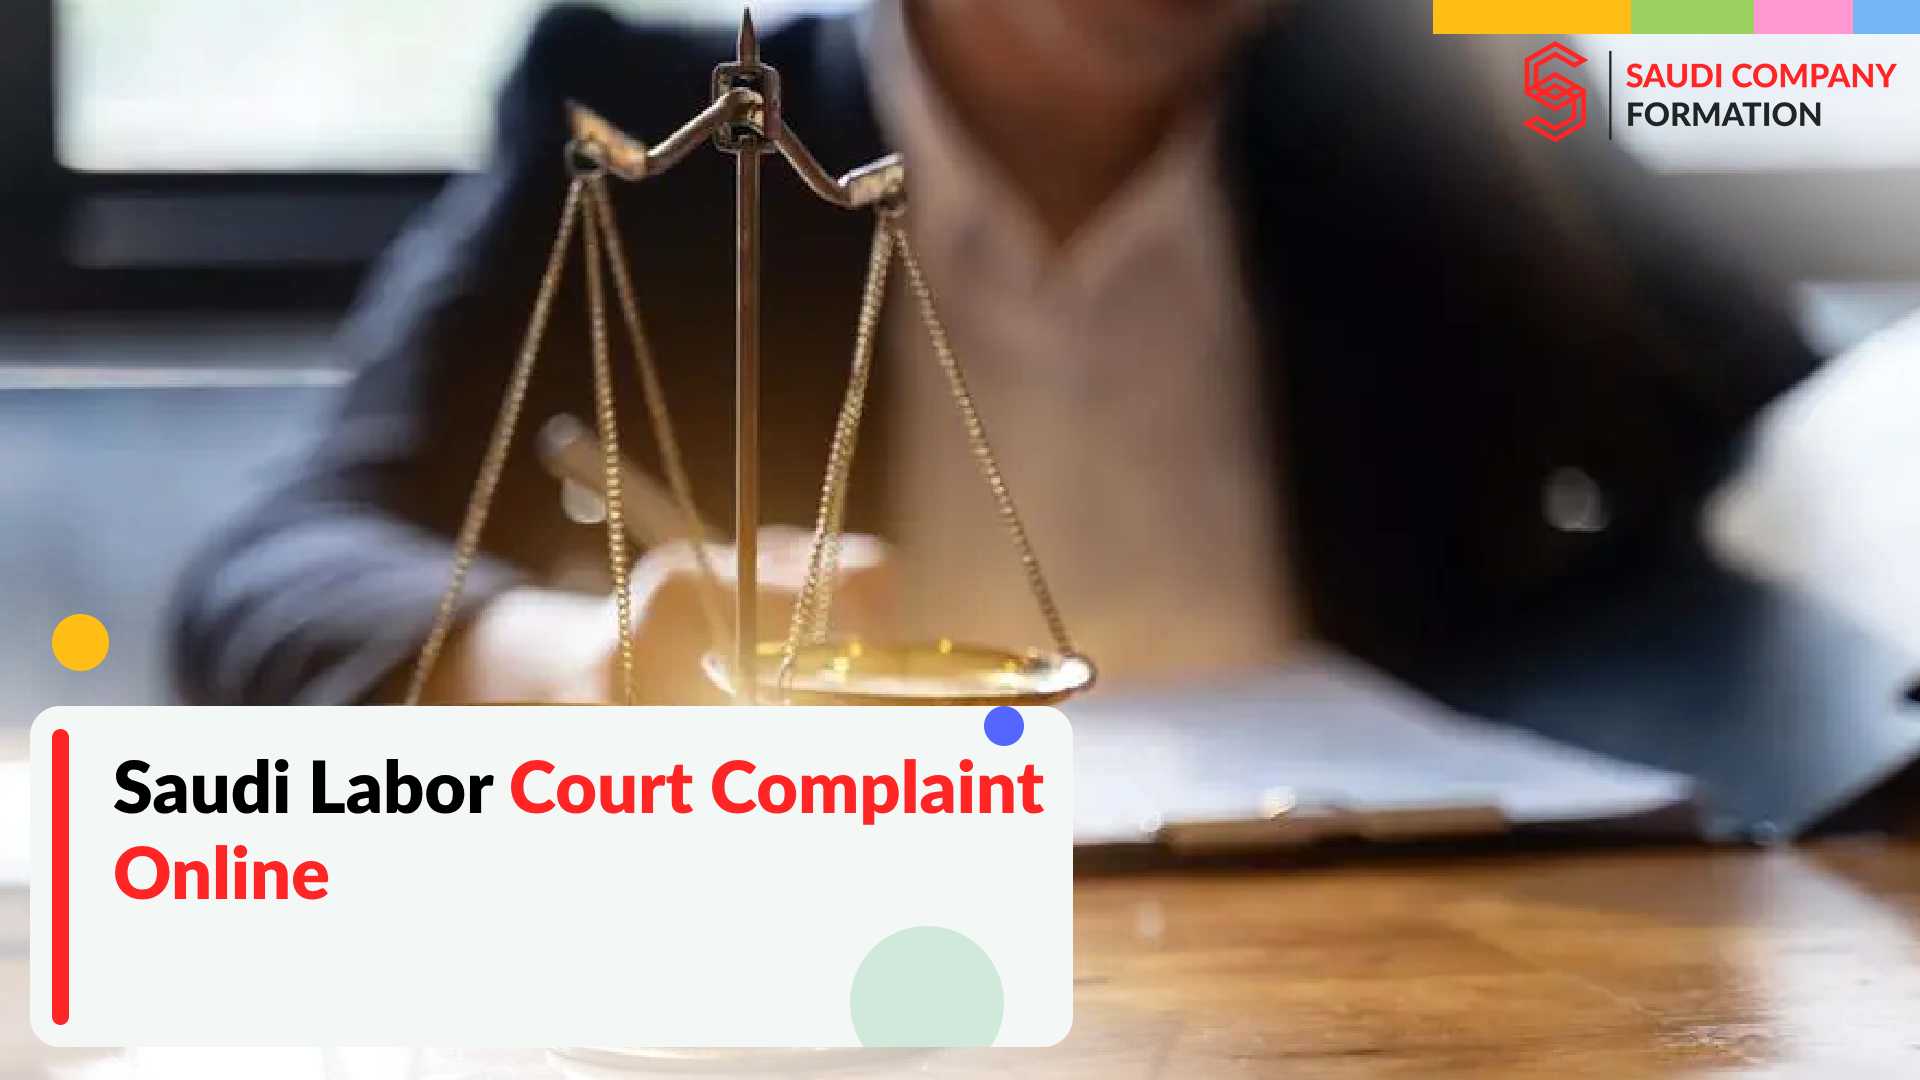 online complaint to labour court Saudi Arabia